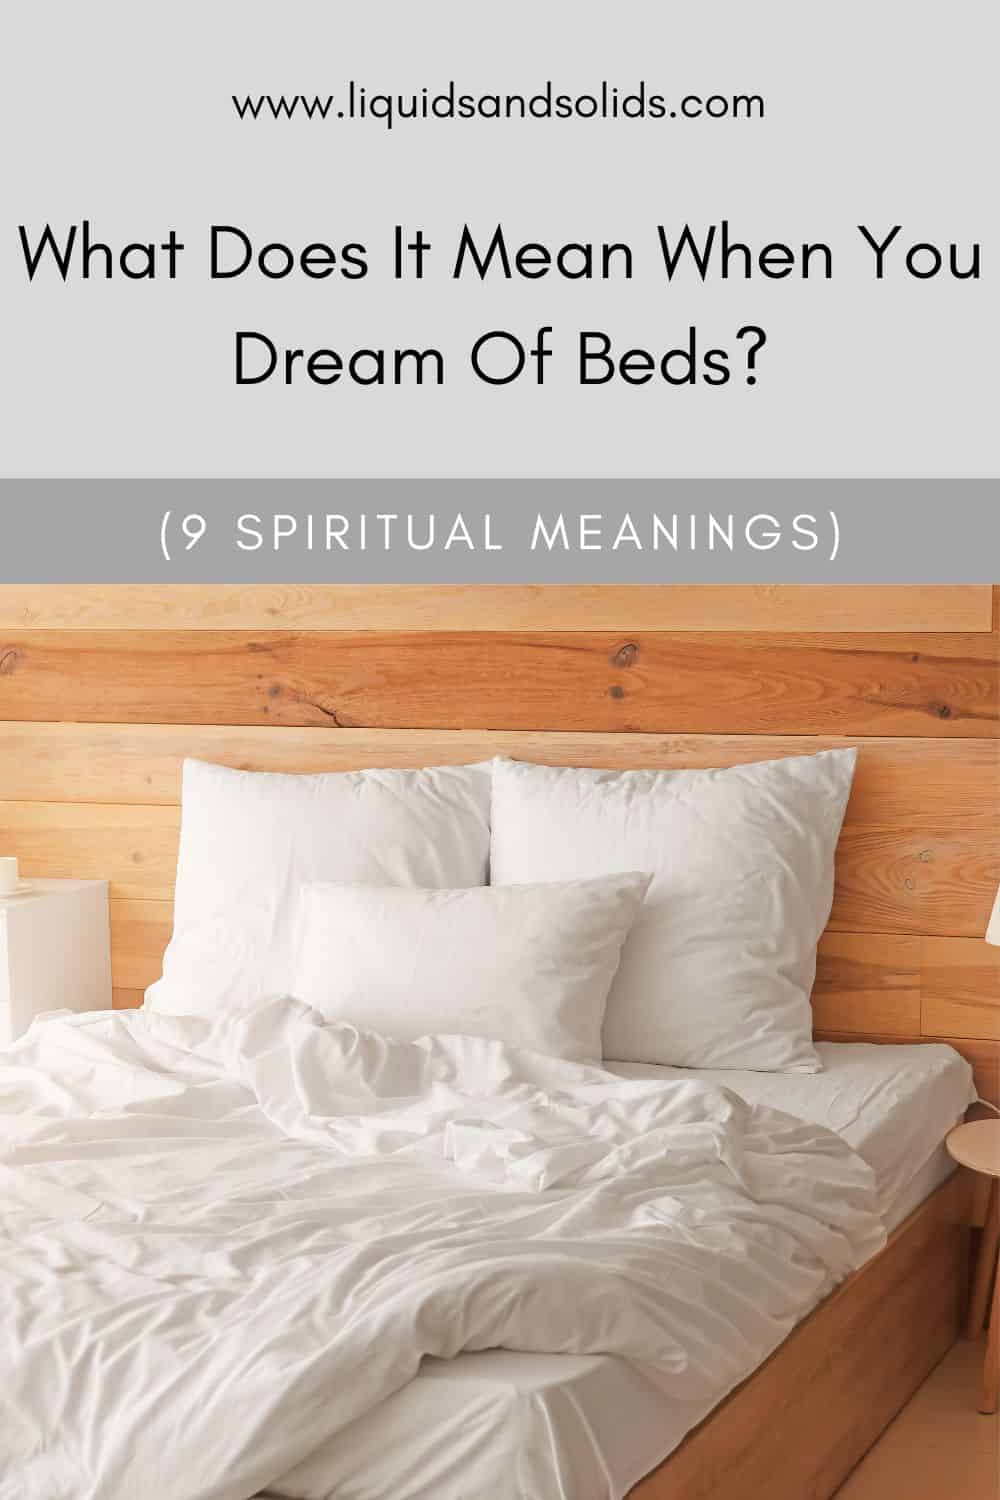  Ce que signifie rêver de lits (9 significations spirituelles)